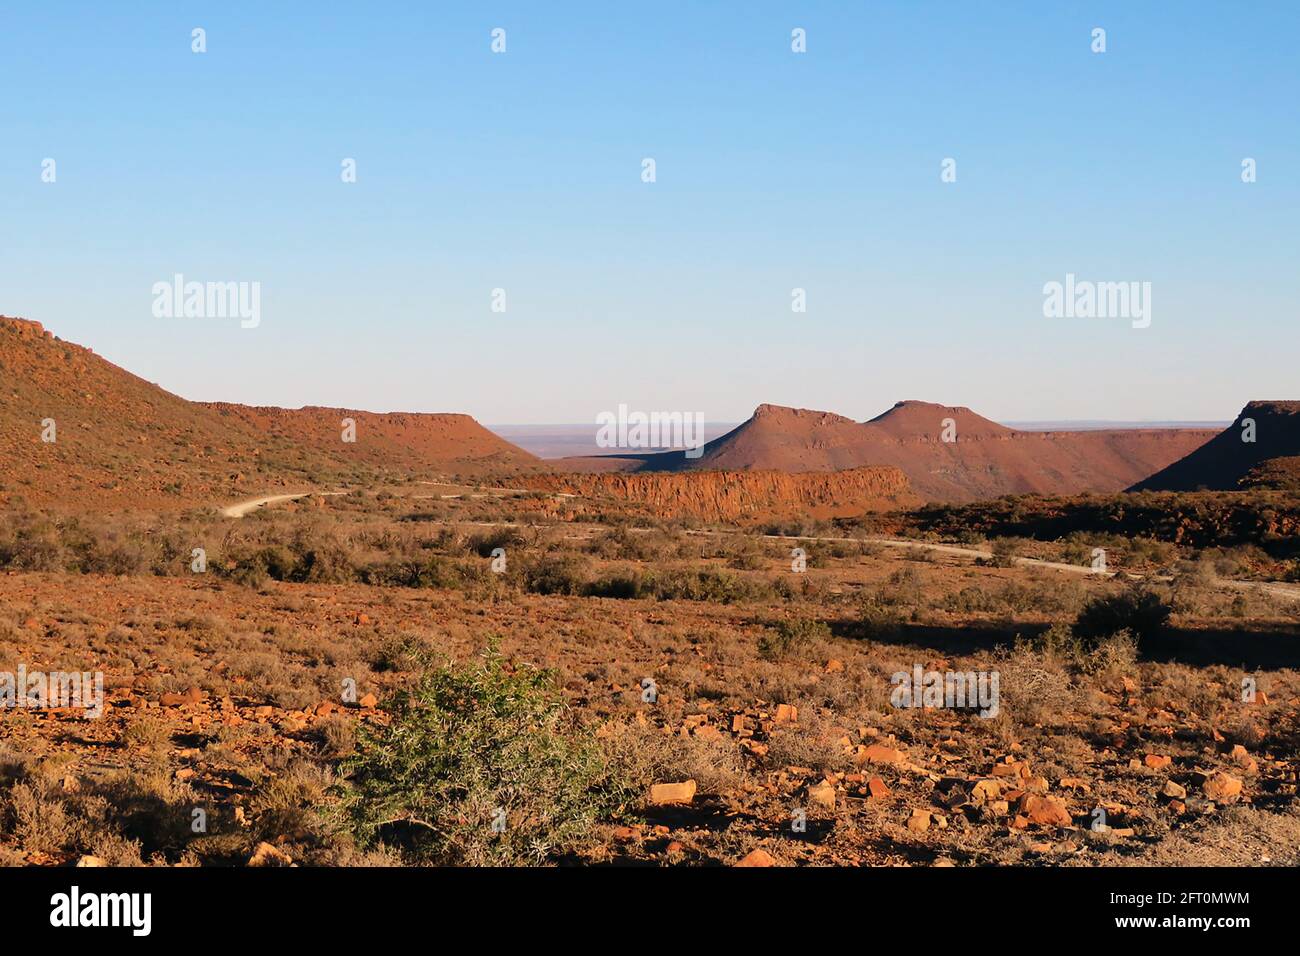 Terre deserte immagini e fotografie stock ad alta risoluzione - Alamy